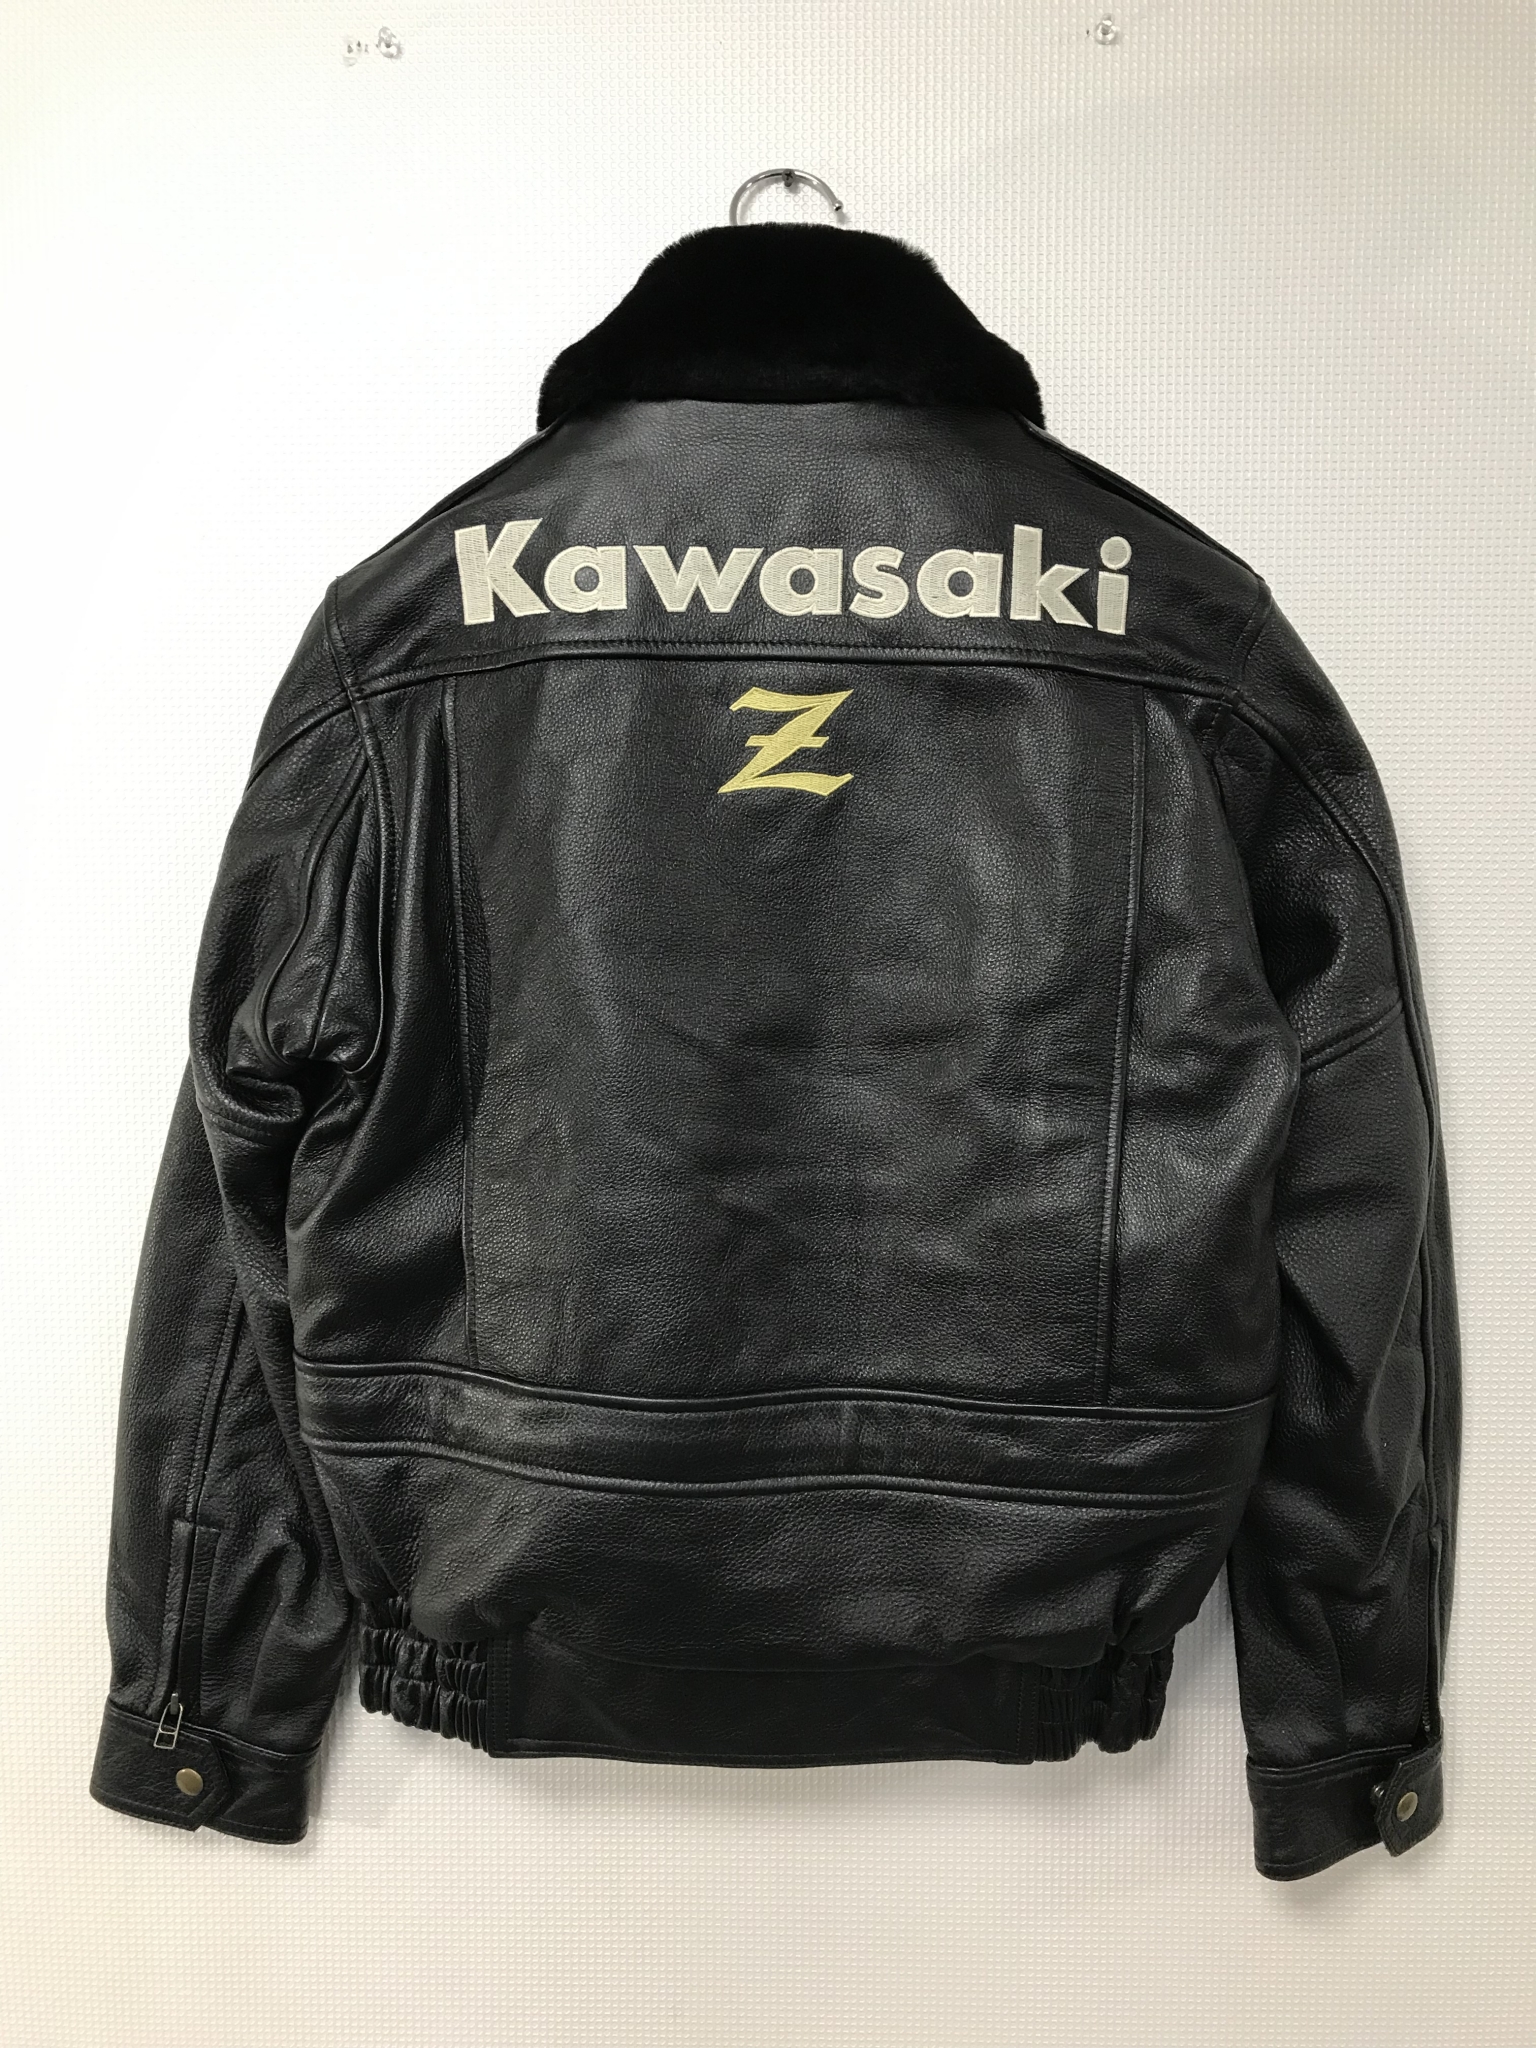 Kawasaki Z カドヤ革ジャン | バイクチーム刺繍・革ジャン刺繍・MCワッペンならG2 | 刺繍入りバイクベスト・応援ユニフォーム刺繍